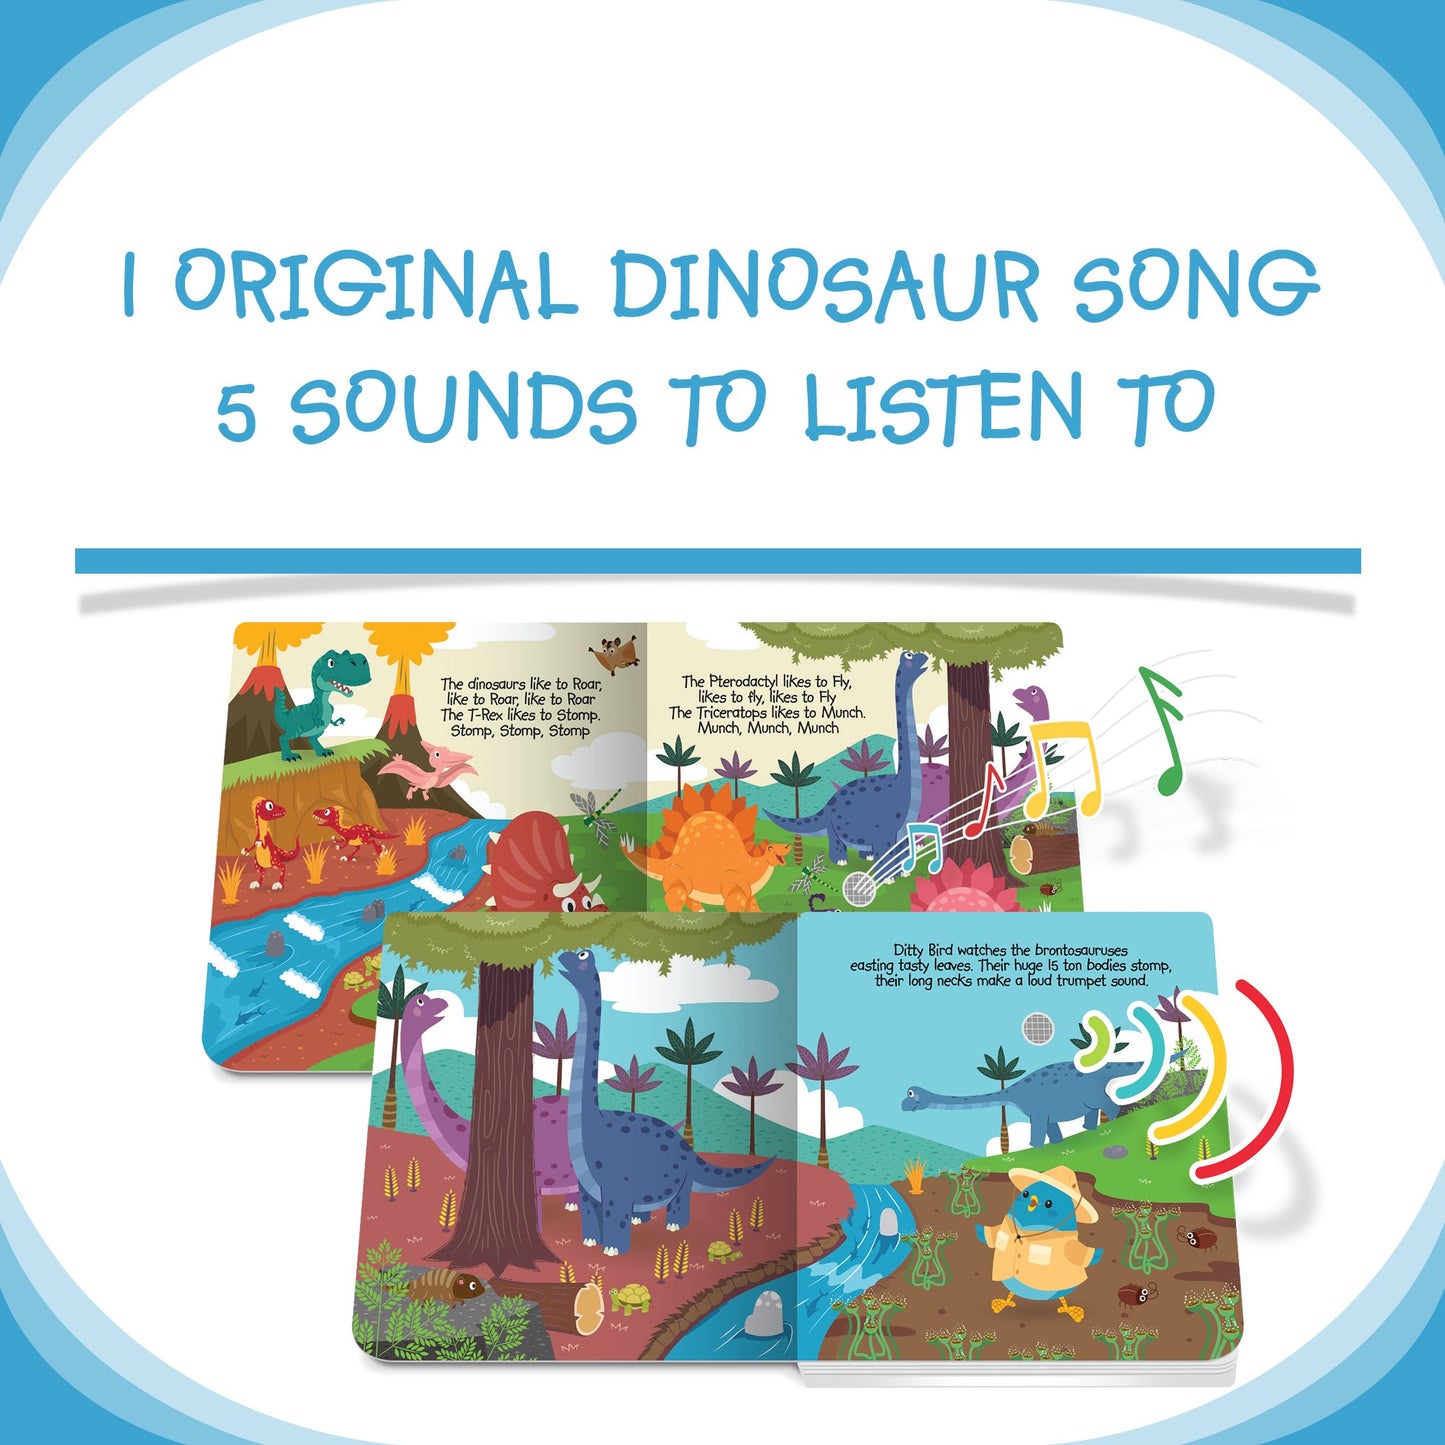 Dinosaur Sounds